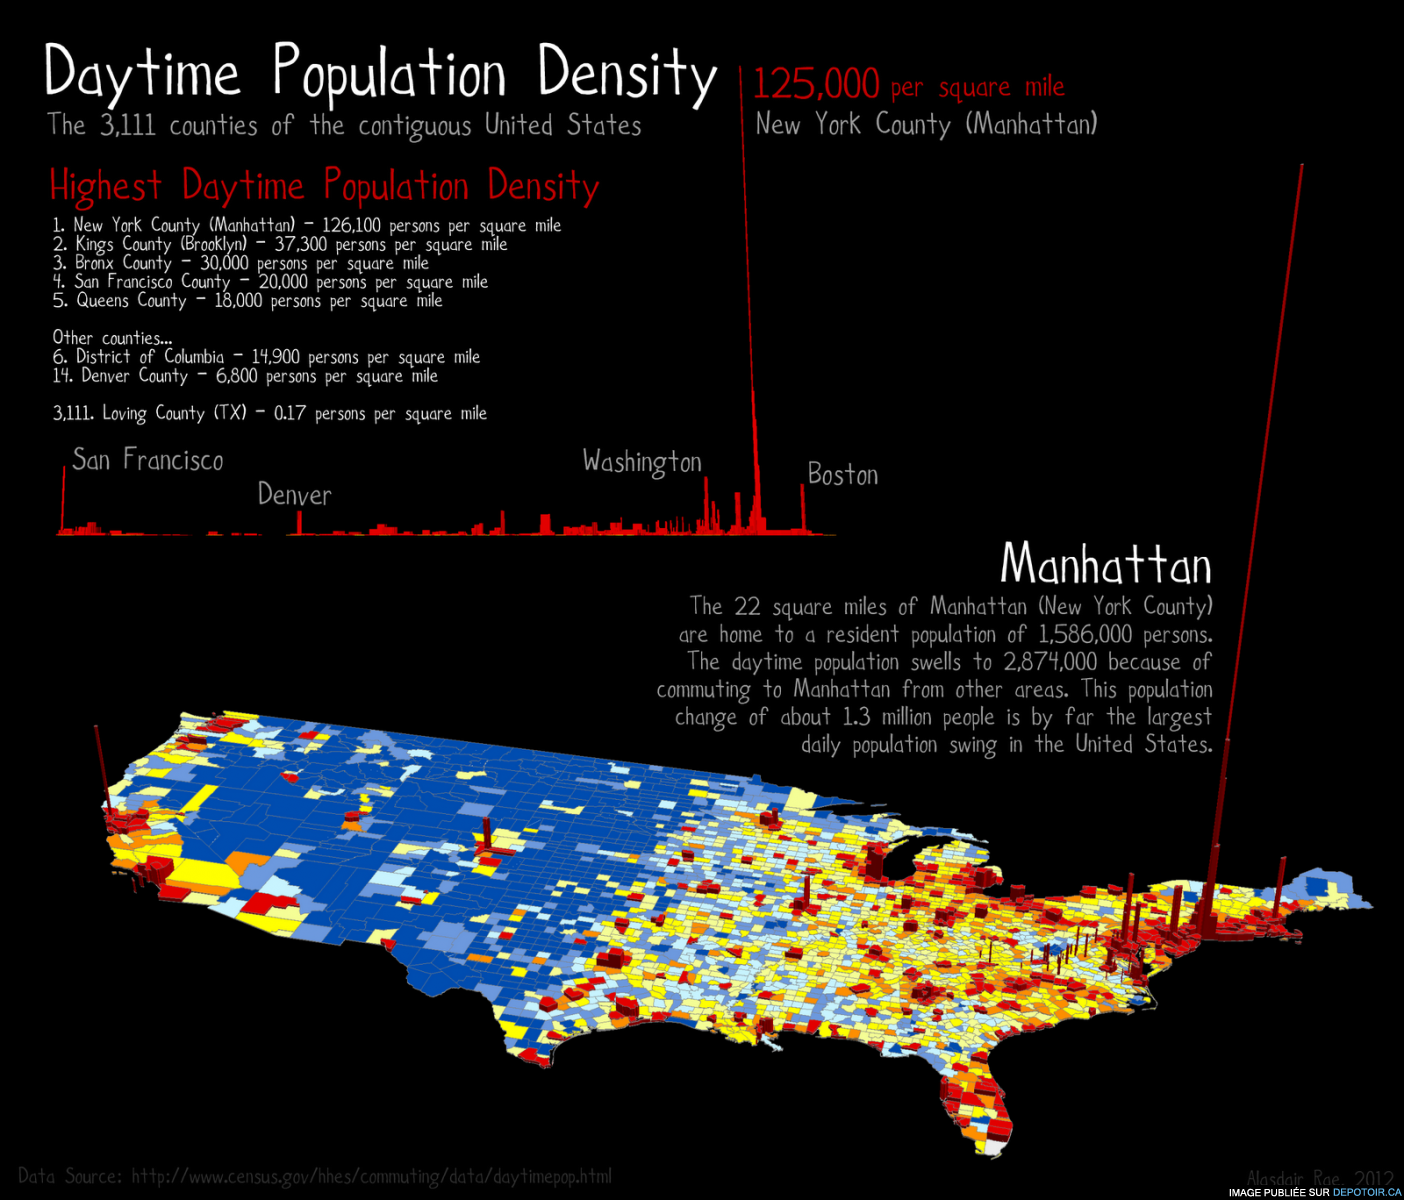 United States Daytime Population Density